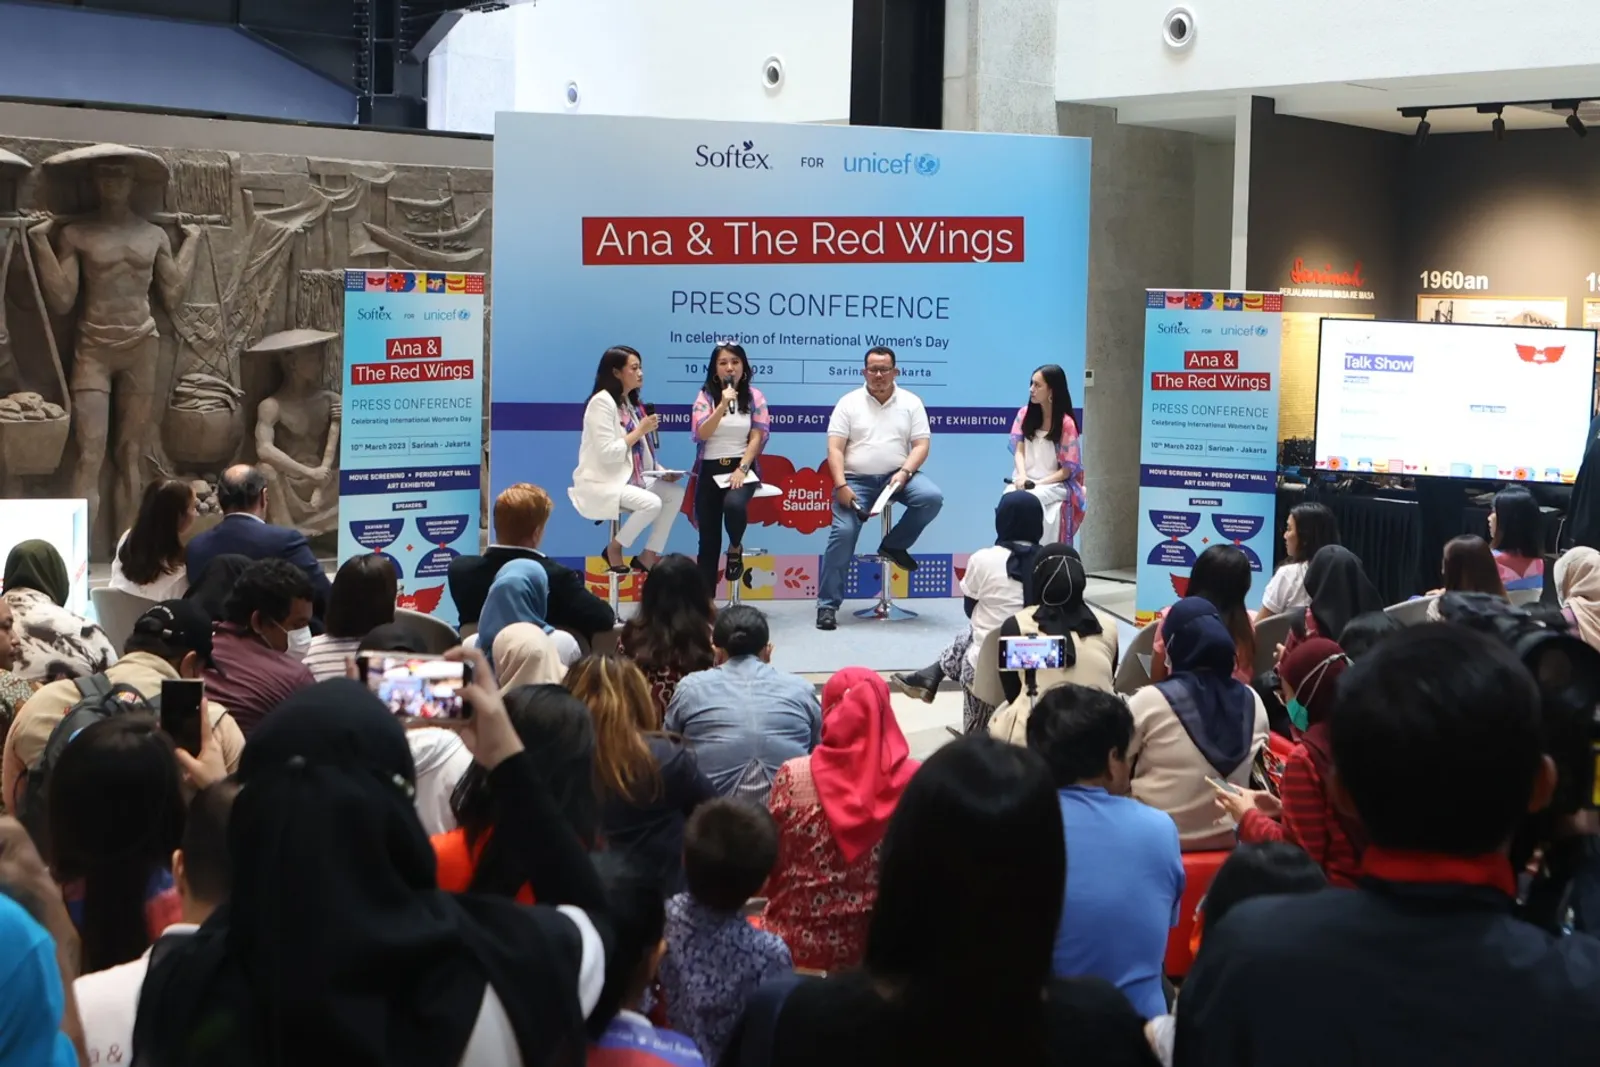 'Ana & The Red Wings', Persembahan Spesial untuk Perempuan dari Softex